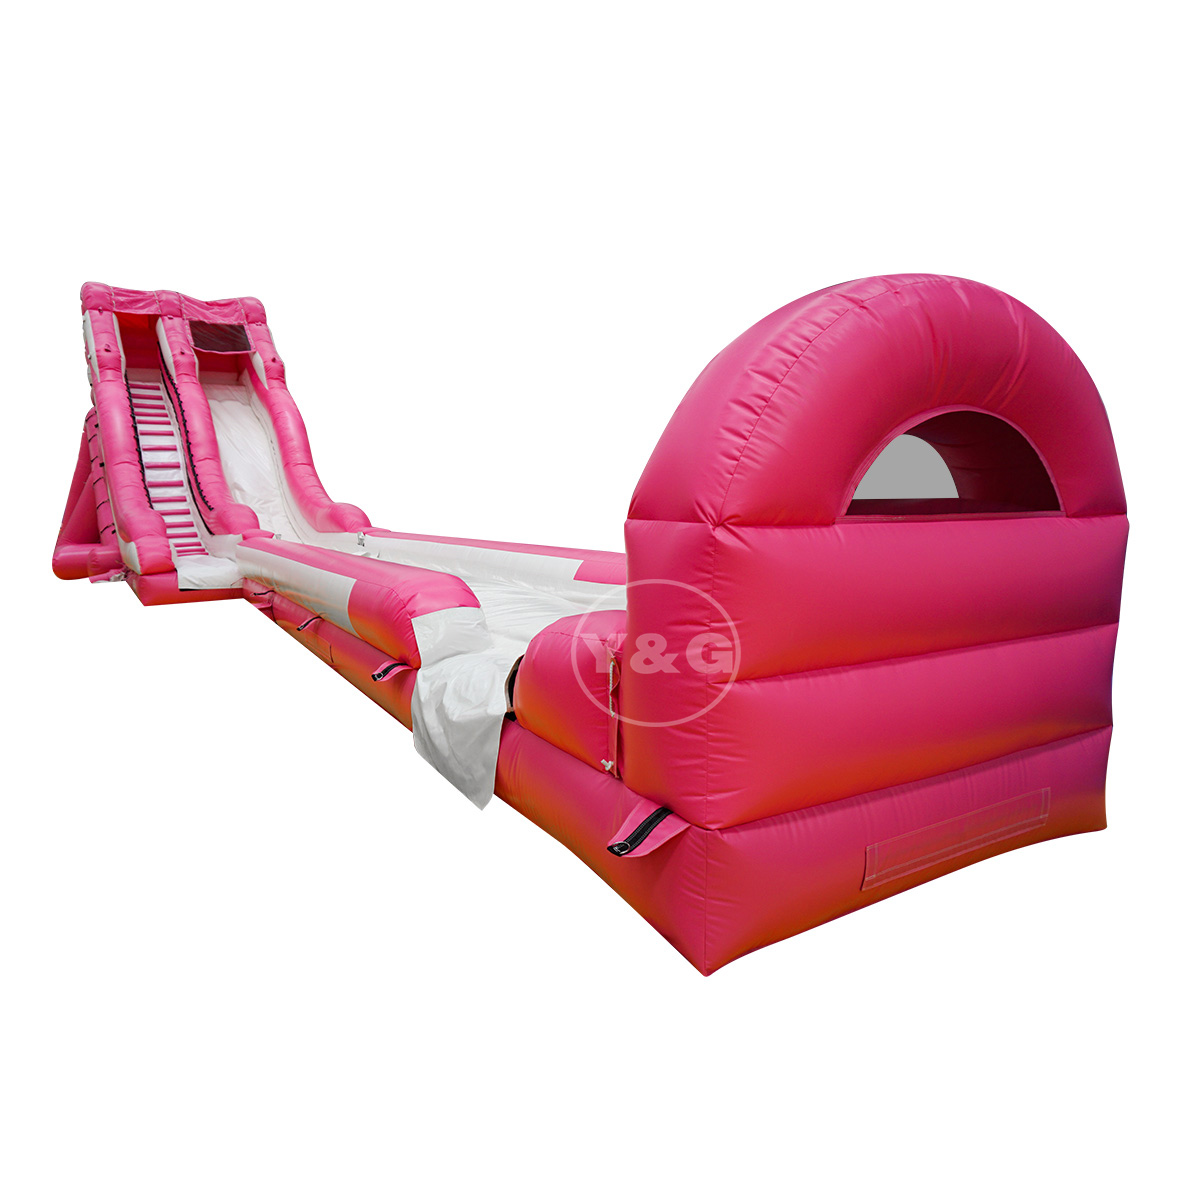 Горячая продажа розовой надувной водной горкиYG-97